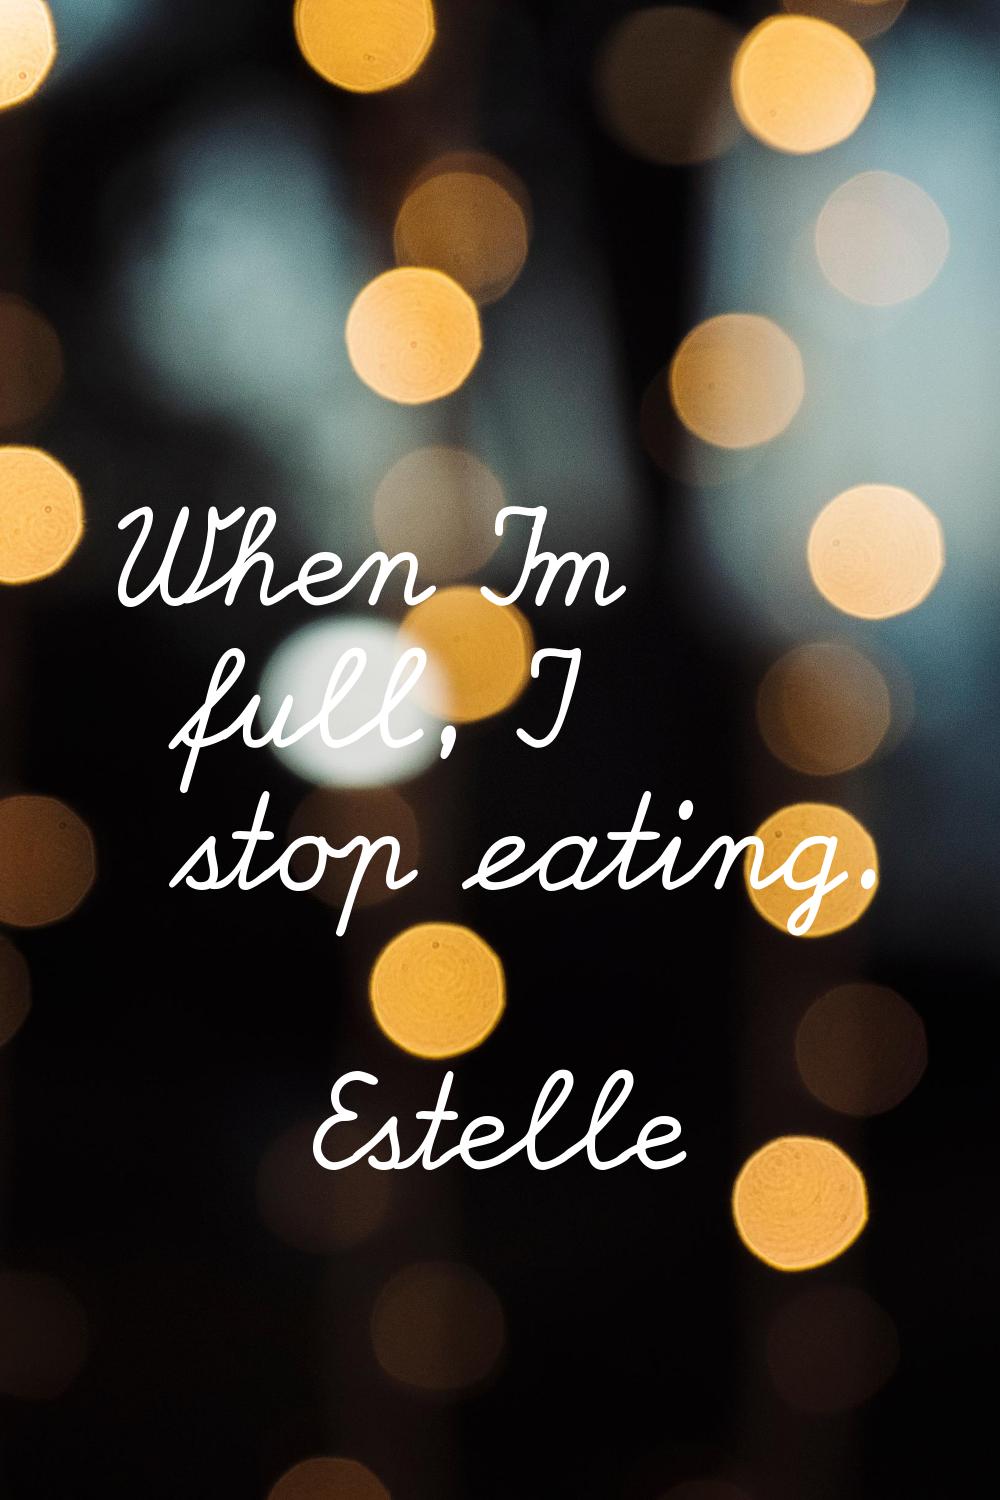 When I'm full, I stop eating.